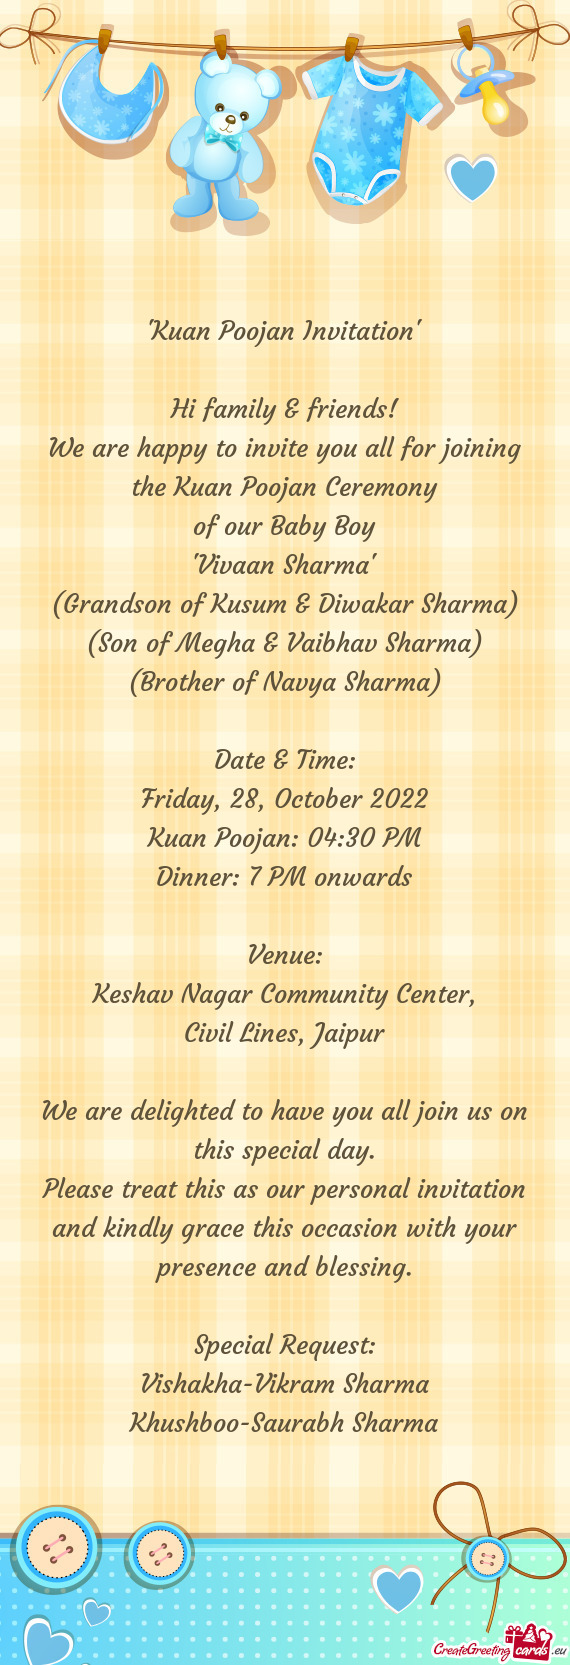 Keshav Nagar Community Center